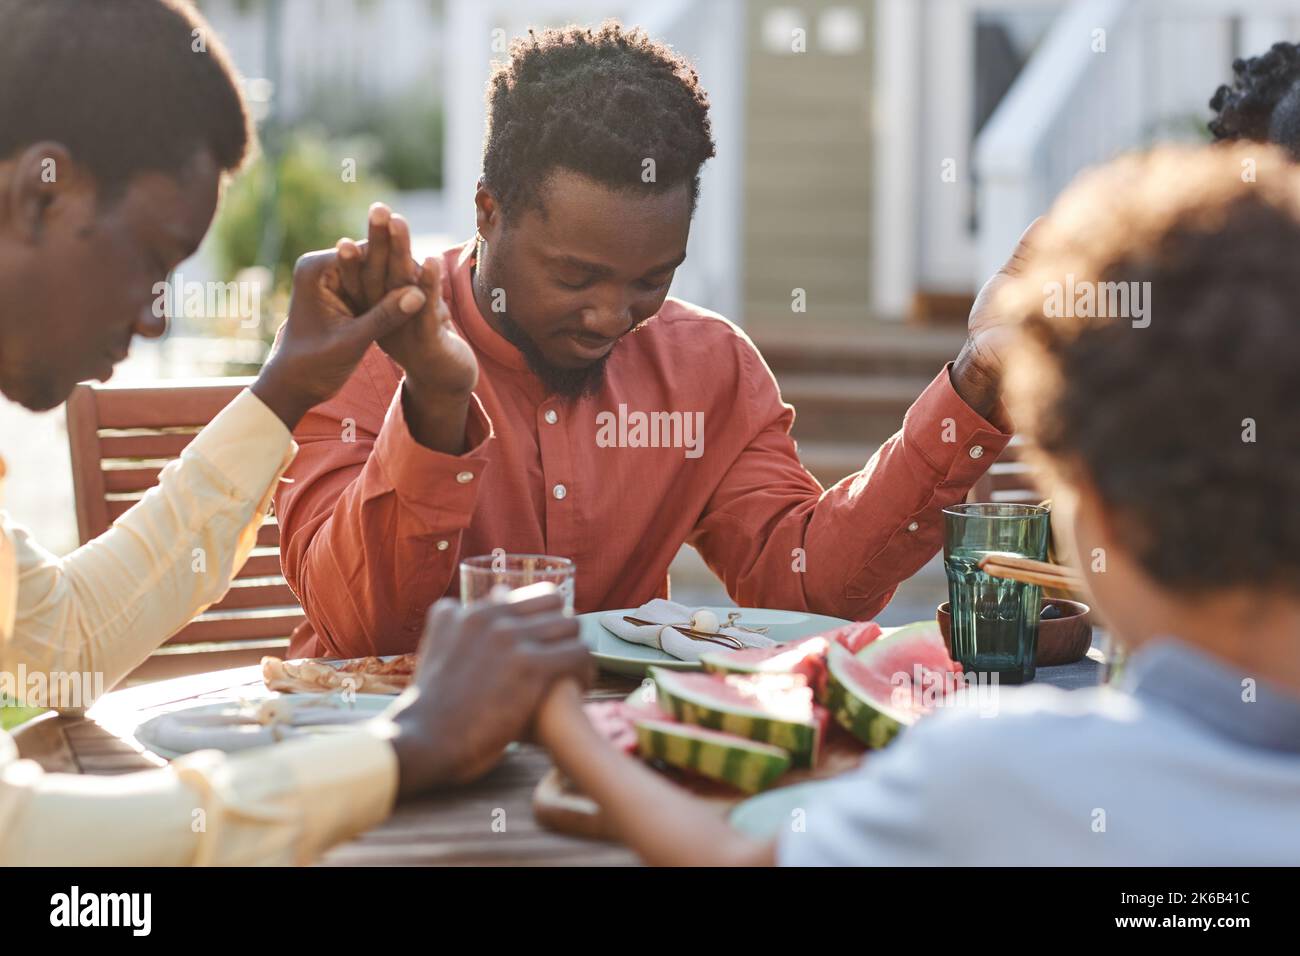 Porträt eines jungen schwarzen Mannes, der im Freien am Tisch Gnade sagt, während die Familie zusammenkommt und die Hände im Sonnenlicht hält Stockfoto